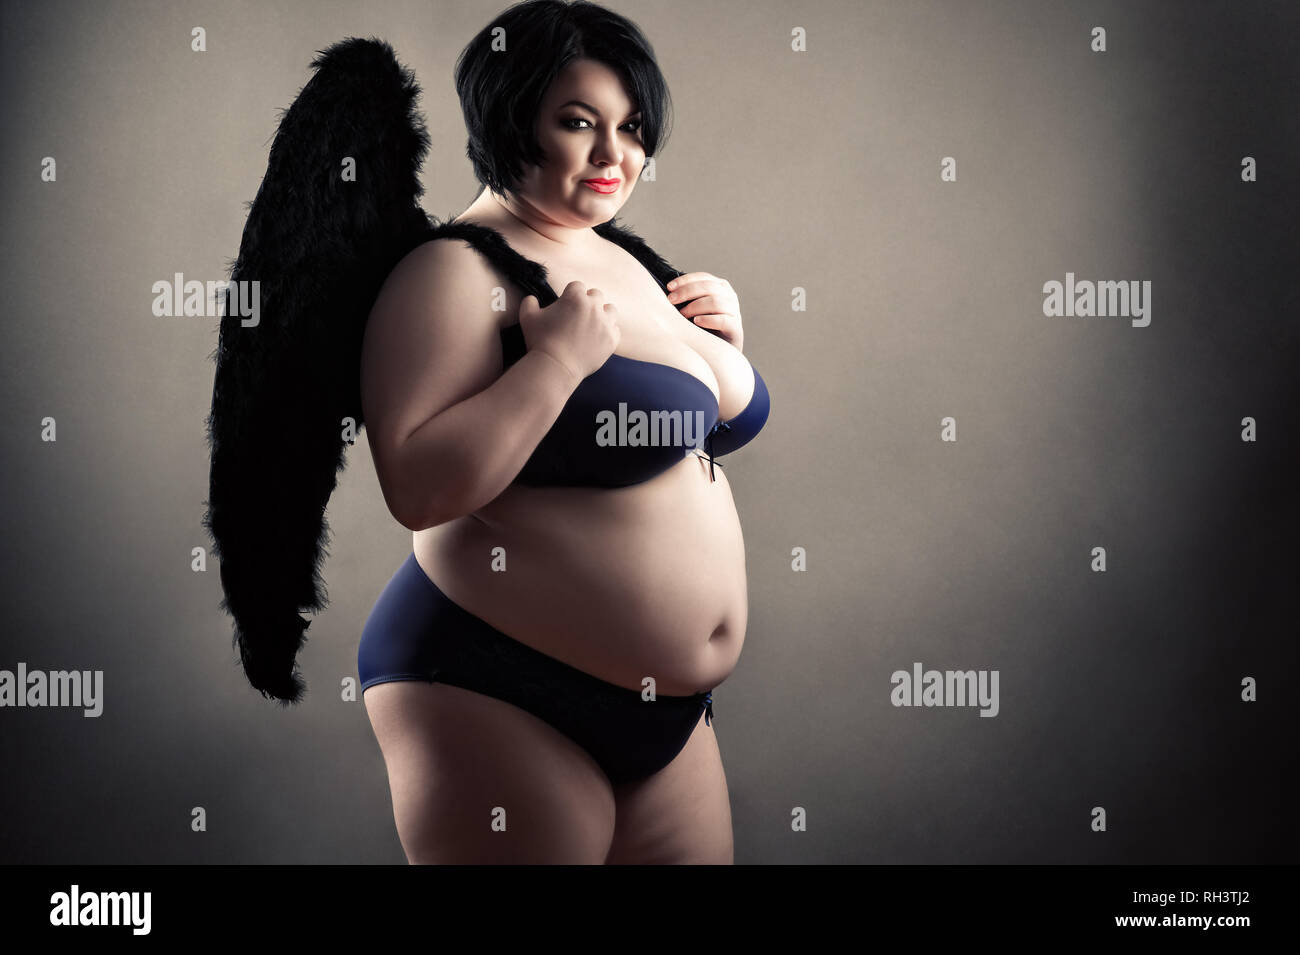 Charmante fette Frau in modischen Dessous mit schwarzen Flügeln Stockfotogr...